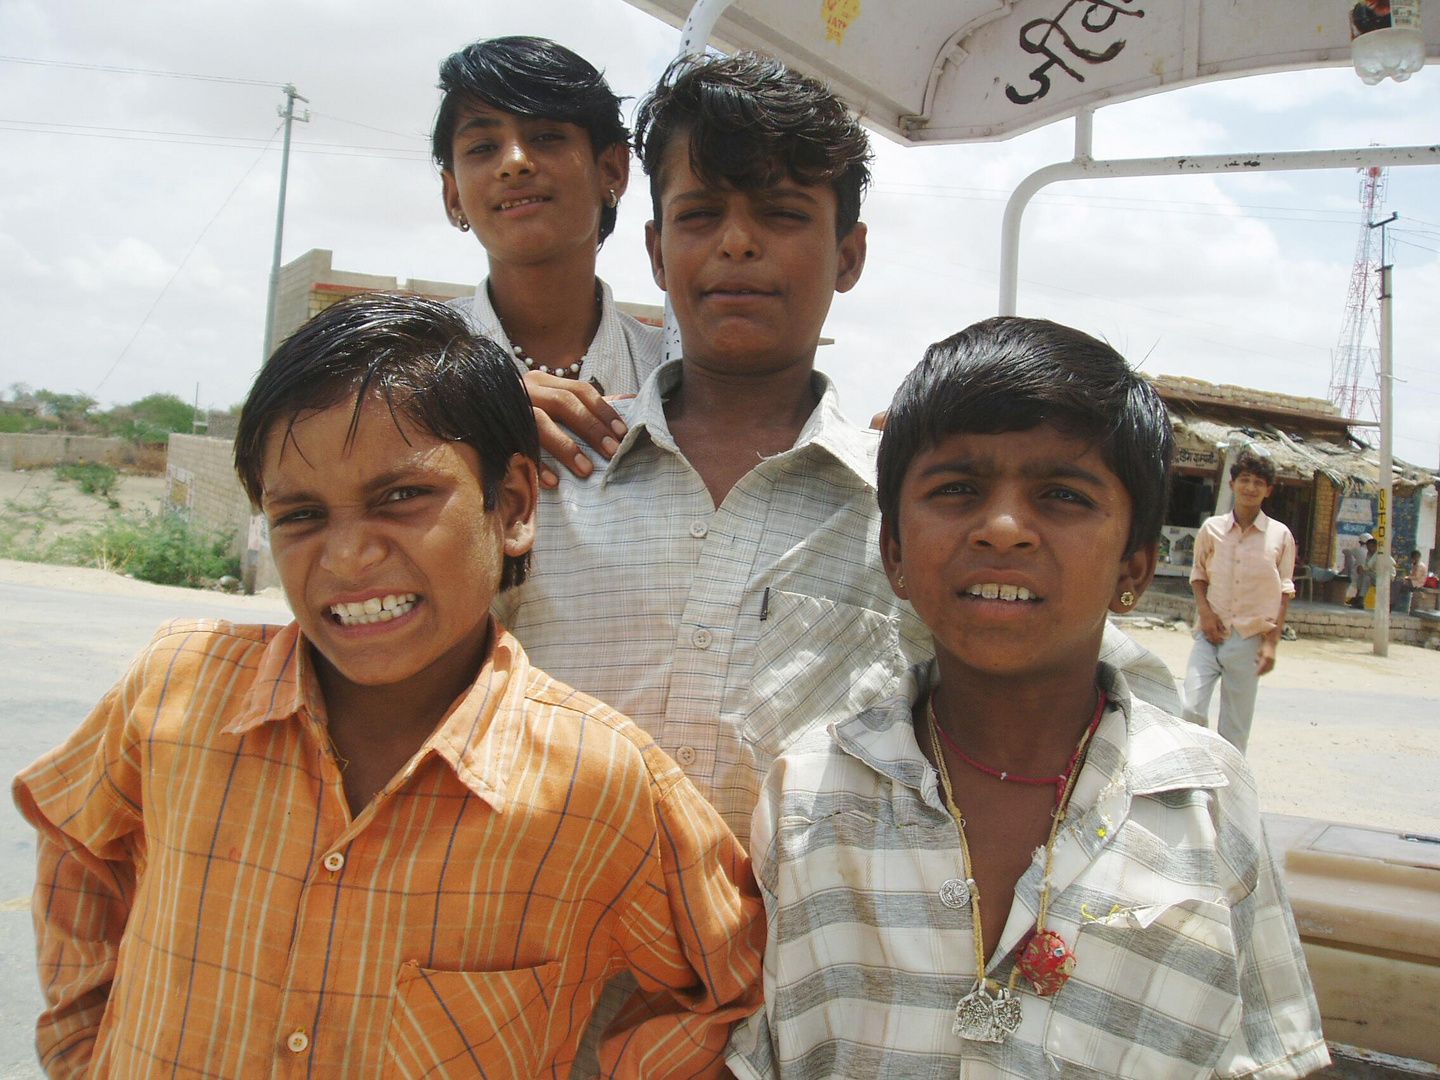 Jugendliche in Rajasthan - Indien